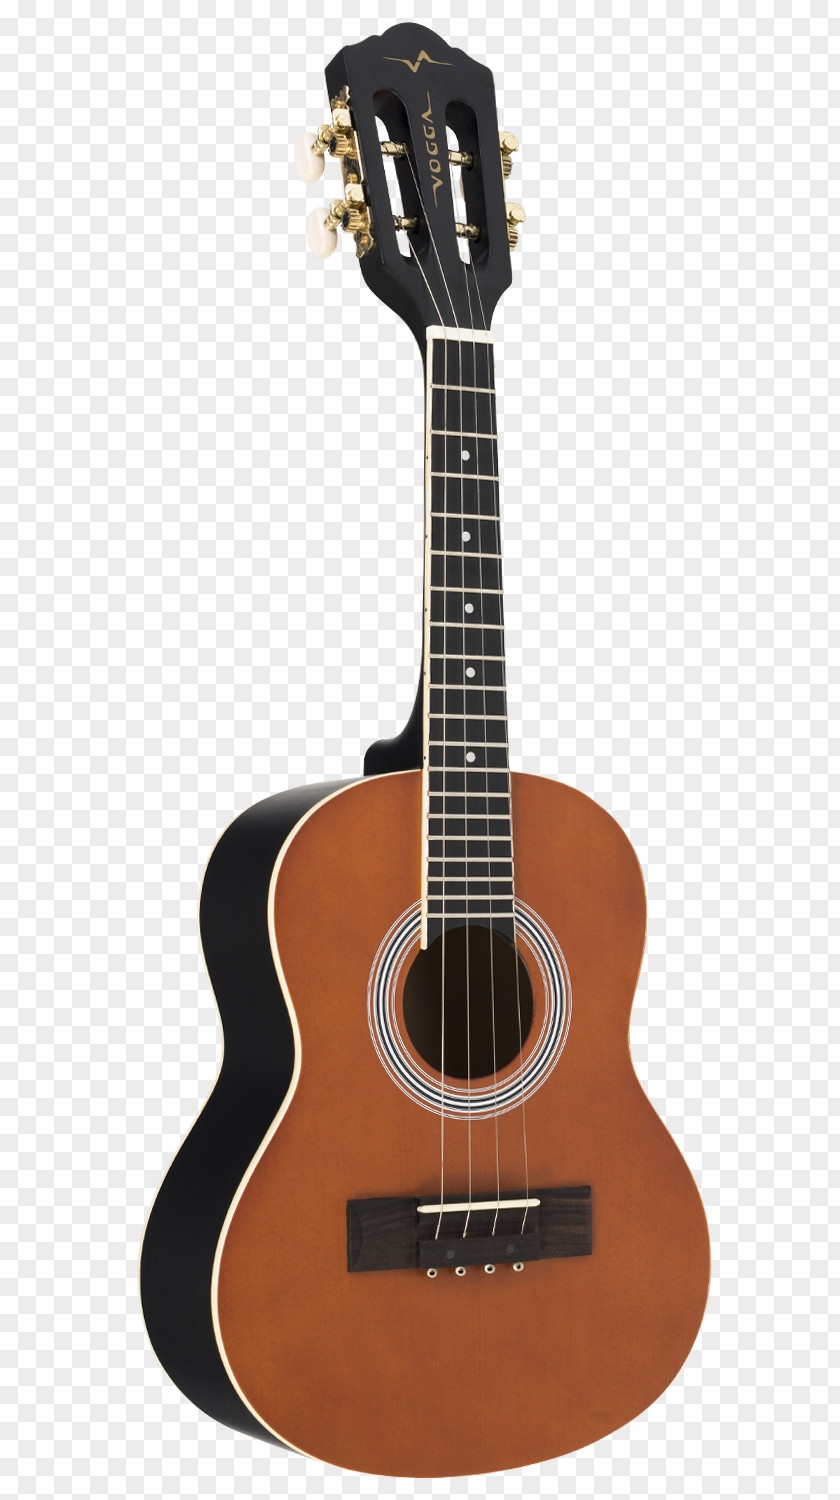 Guitar Luna Guitars Safari Travel Musical Instruments Acoustic PNG